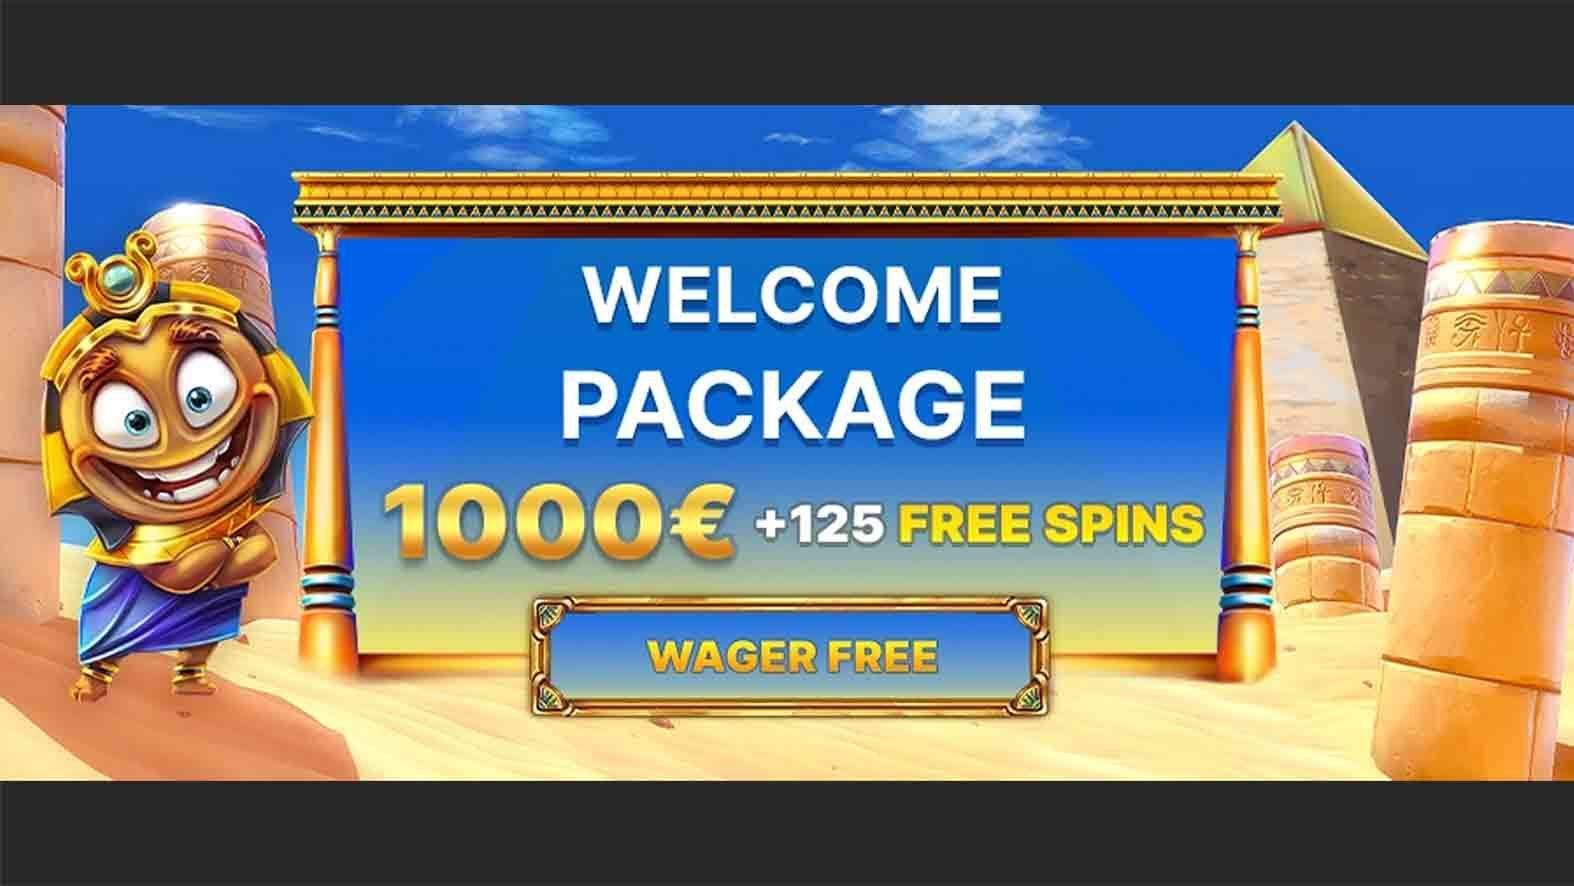 Horus Casino Bonus